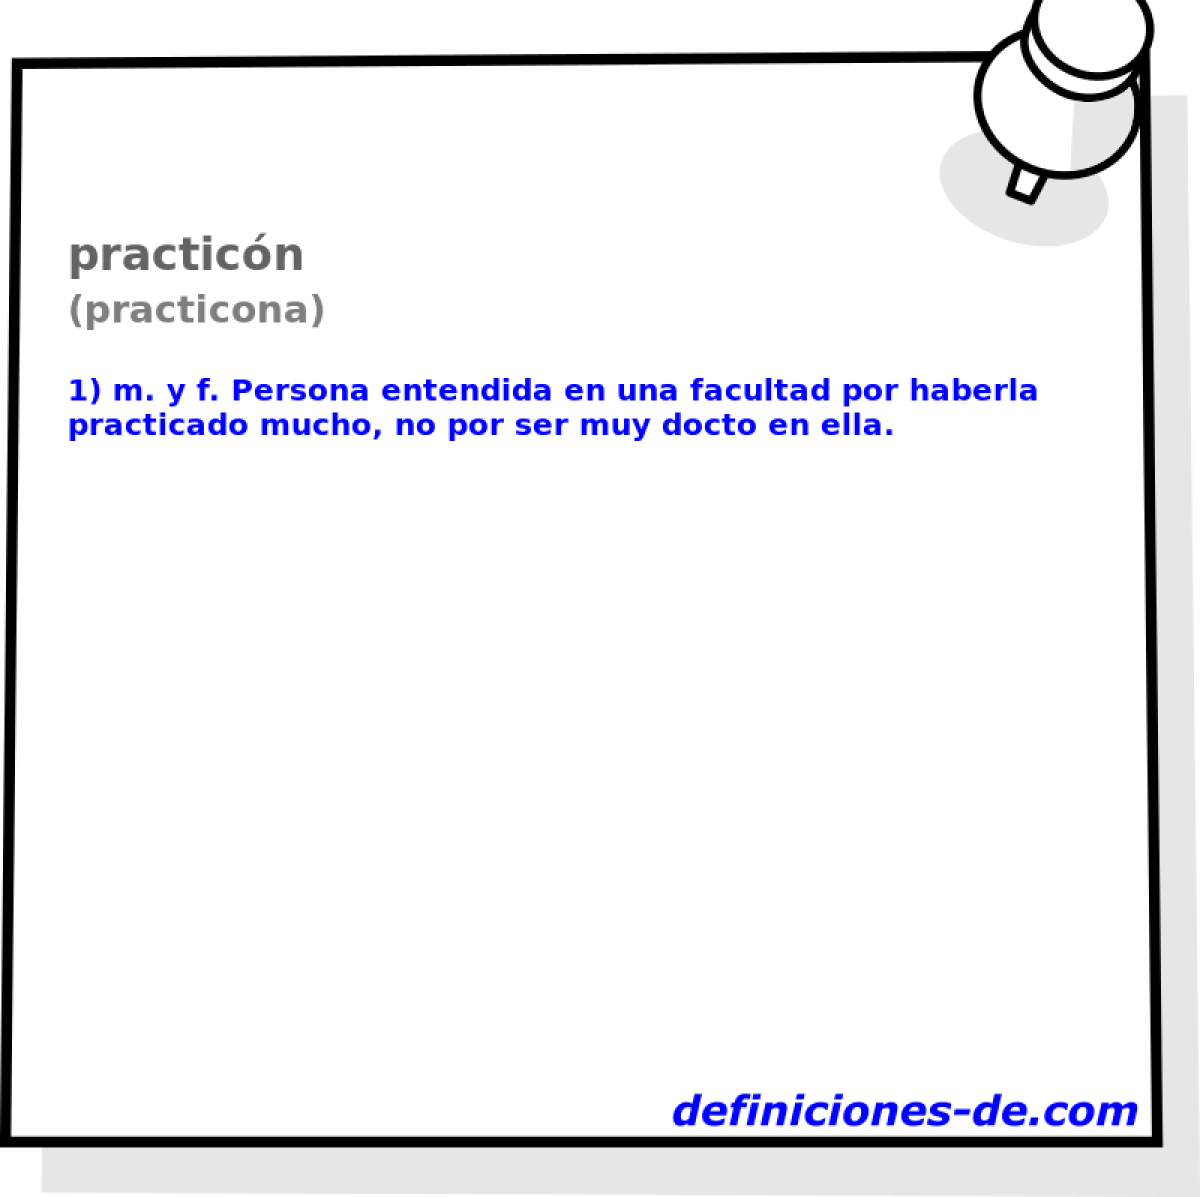 practicn (practicona)